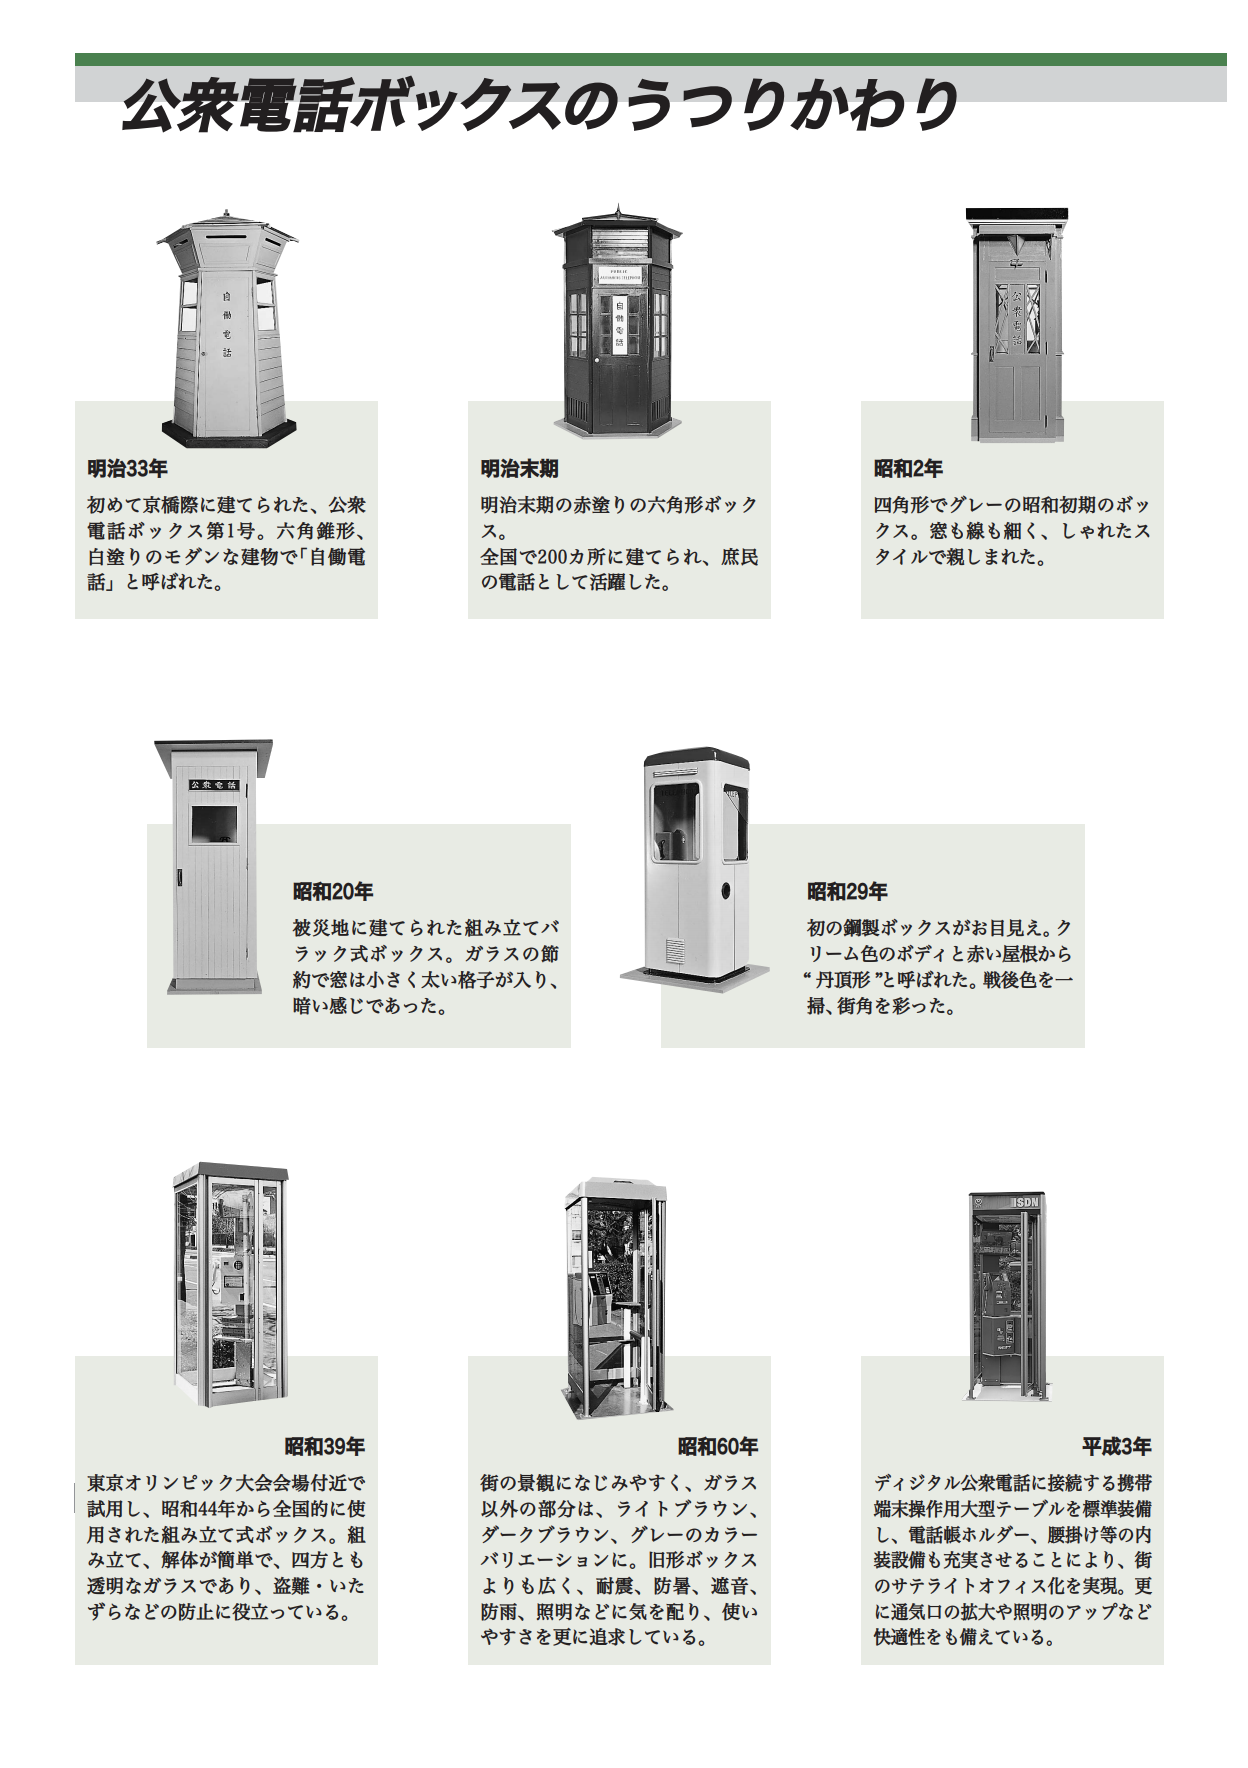 Die Telefonzellen in Japan seit 1900. Das letzte Design stammt aus dem Jahr 1991.